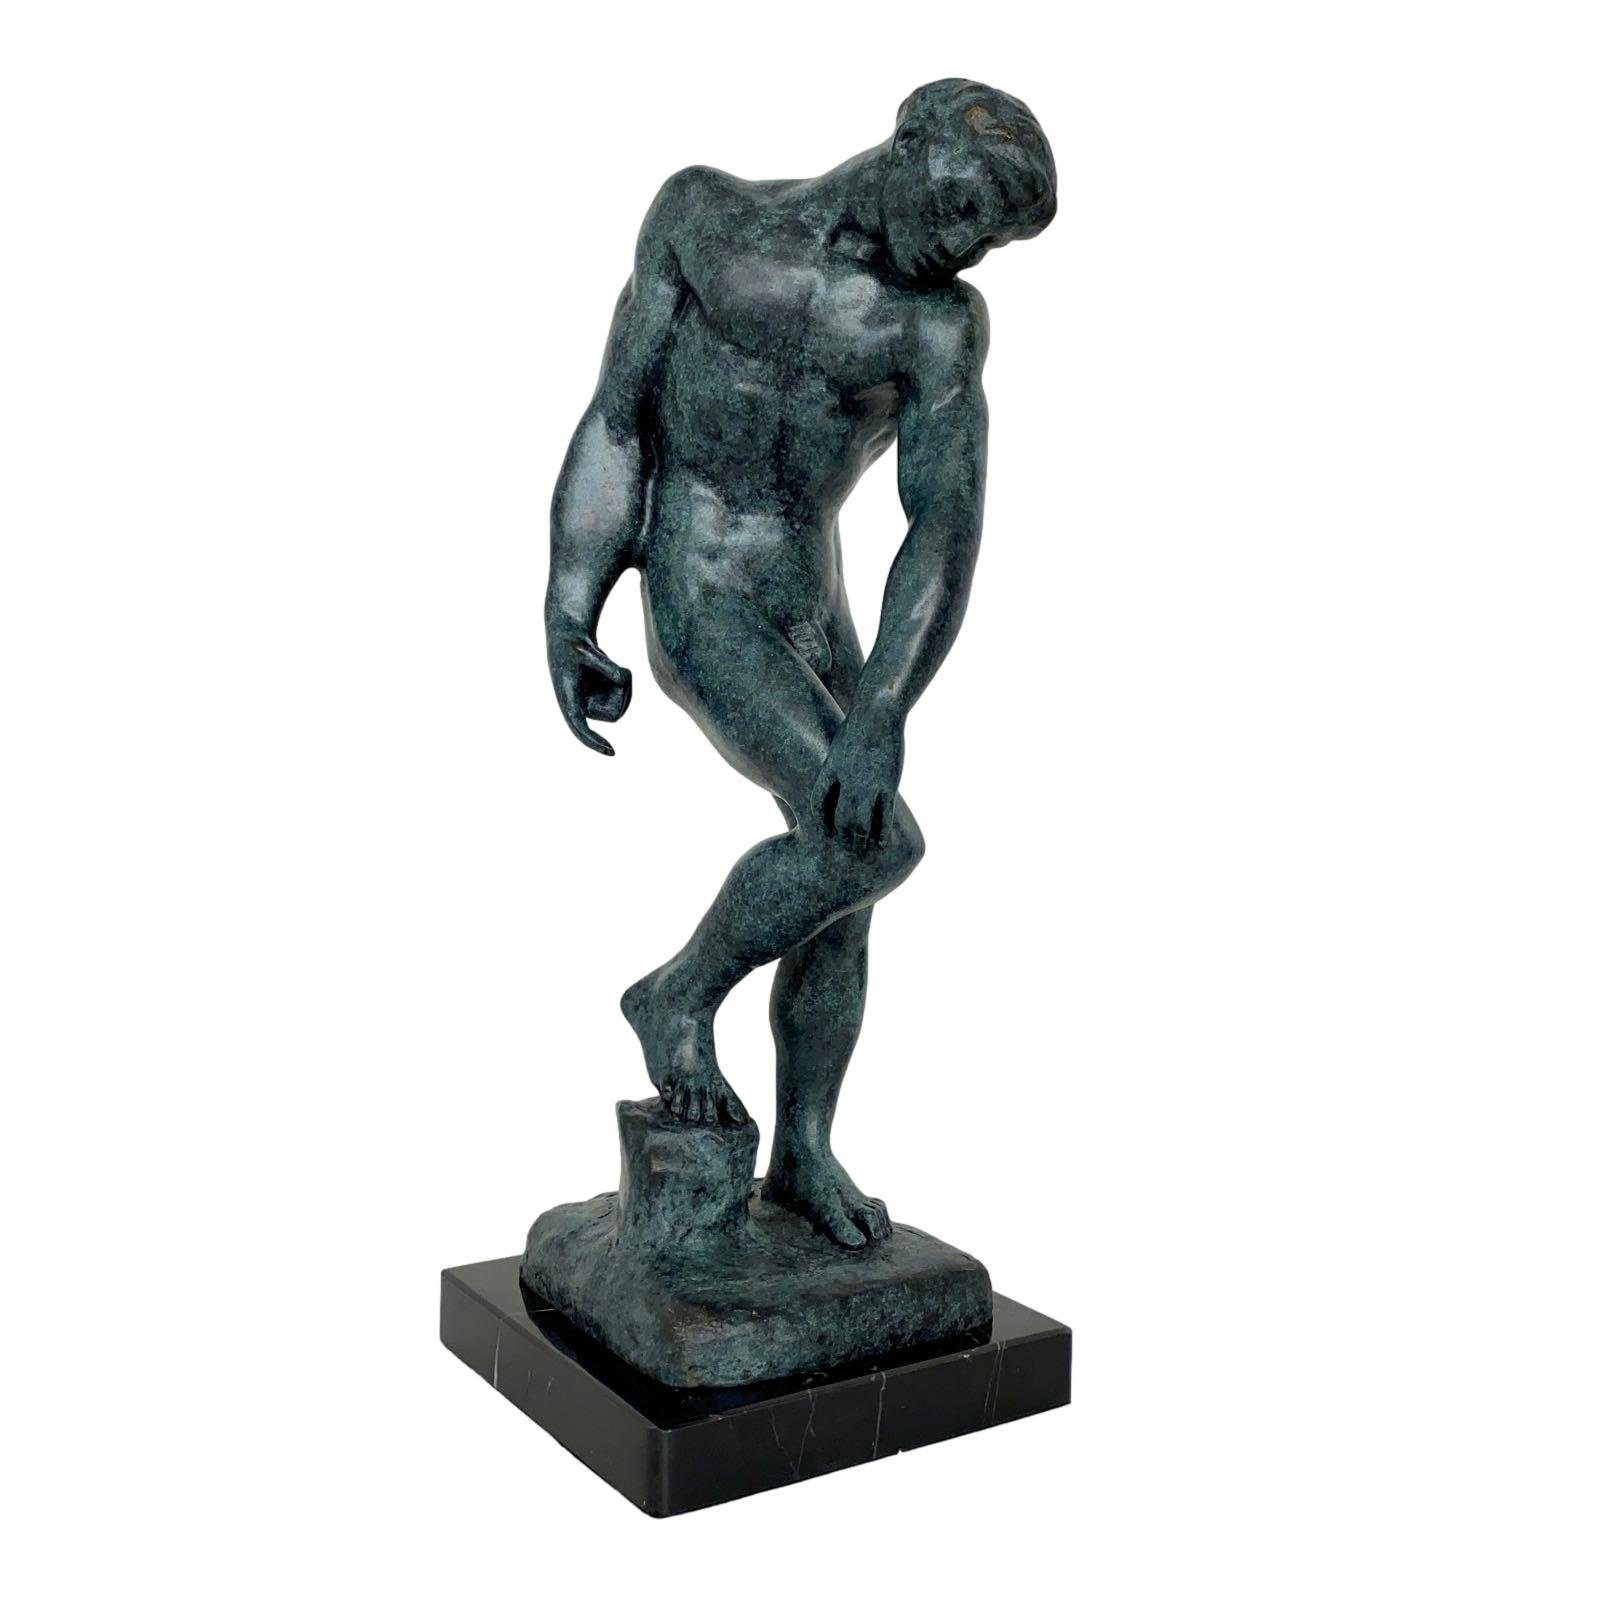 Kopie nach Figur Aubaho Skulptur Statue Repl 30cm Bronzeskulptur Adam Rodin Antik-Stil